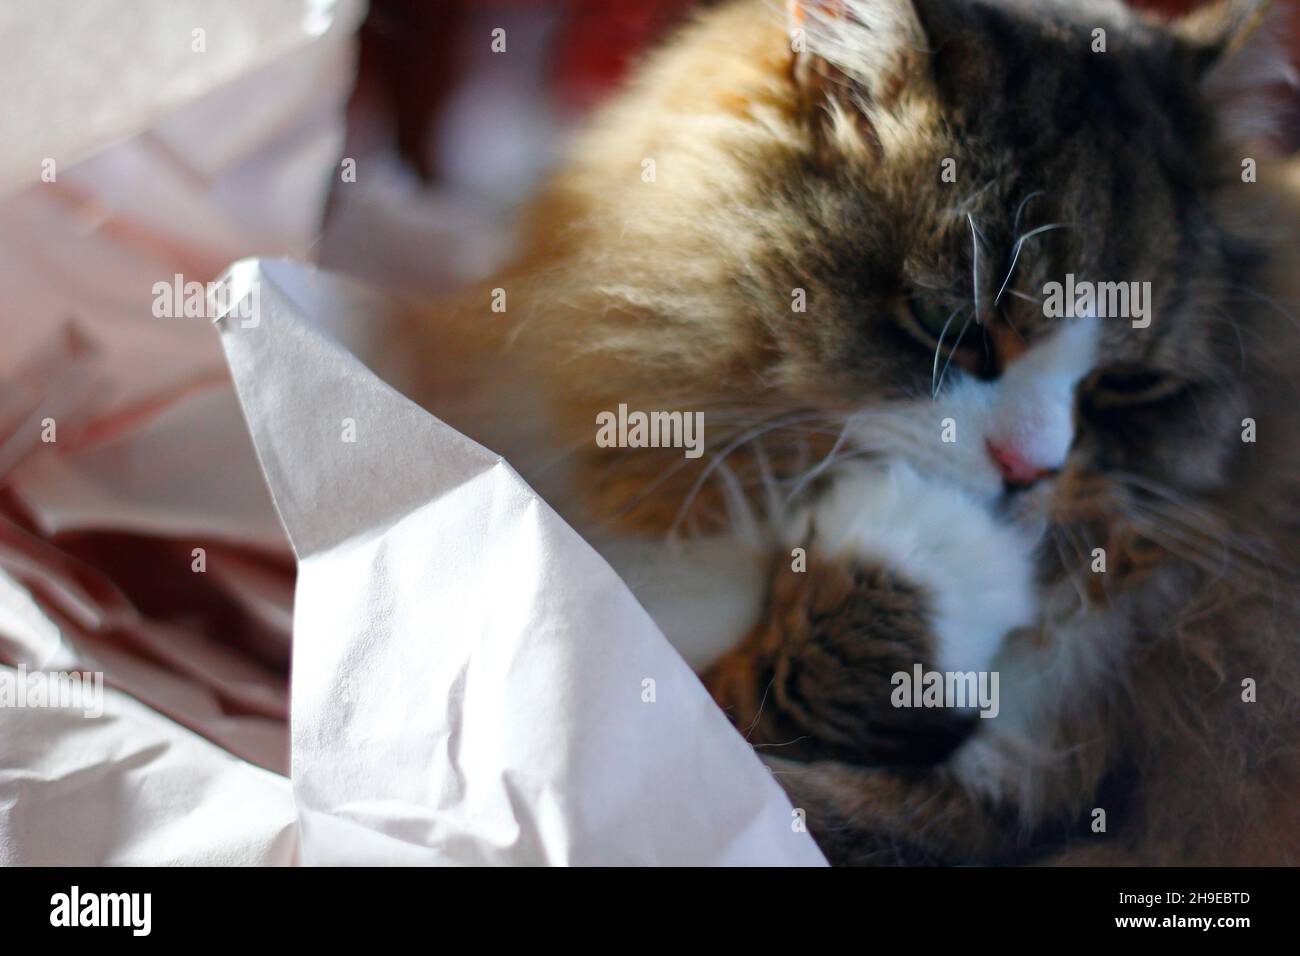 Lindo gato ragamuffin con un montón de papel de amortiguación desmenuzado Foto de stock